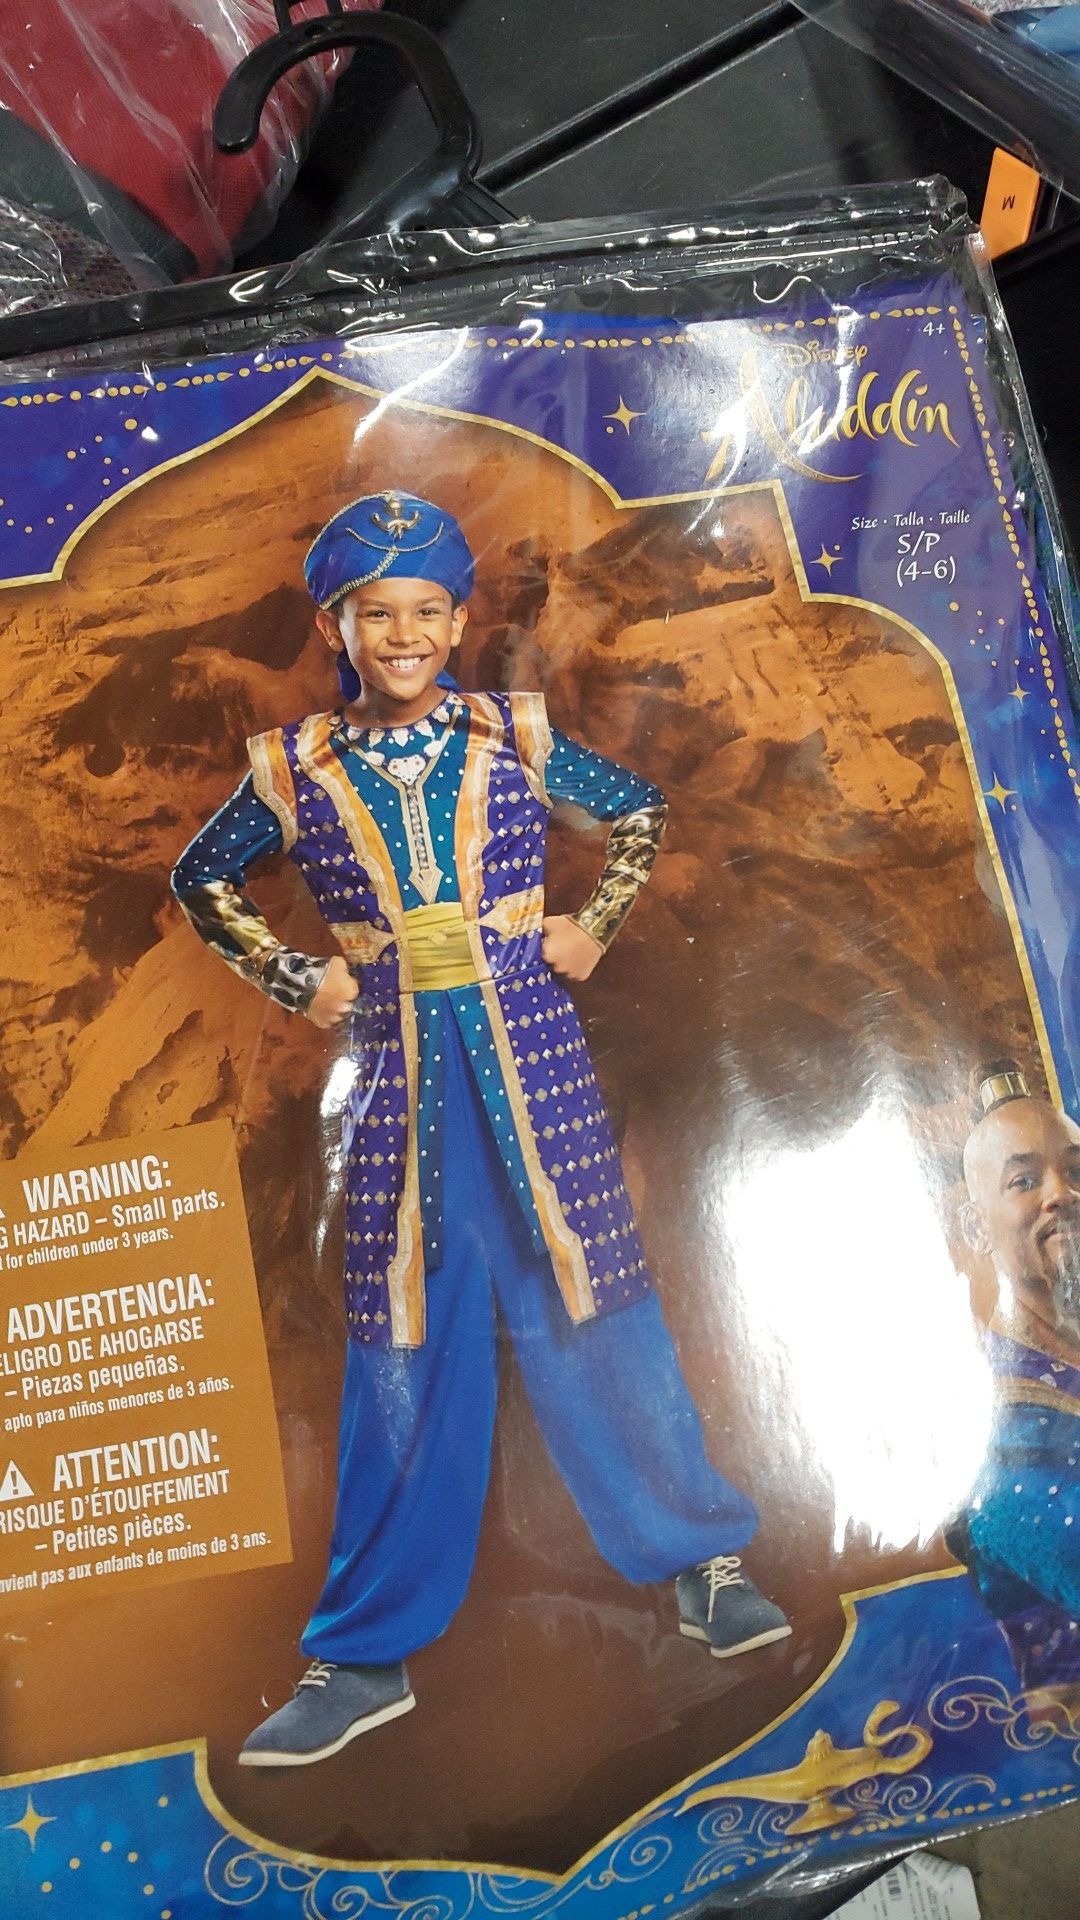 Disney Aladdin Genie costume size small 4 to 6